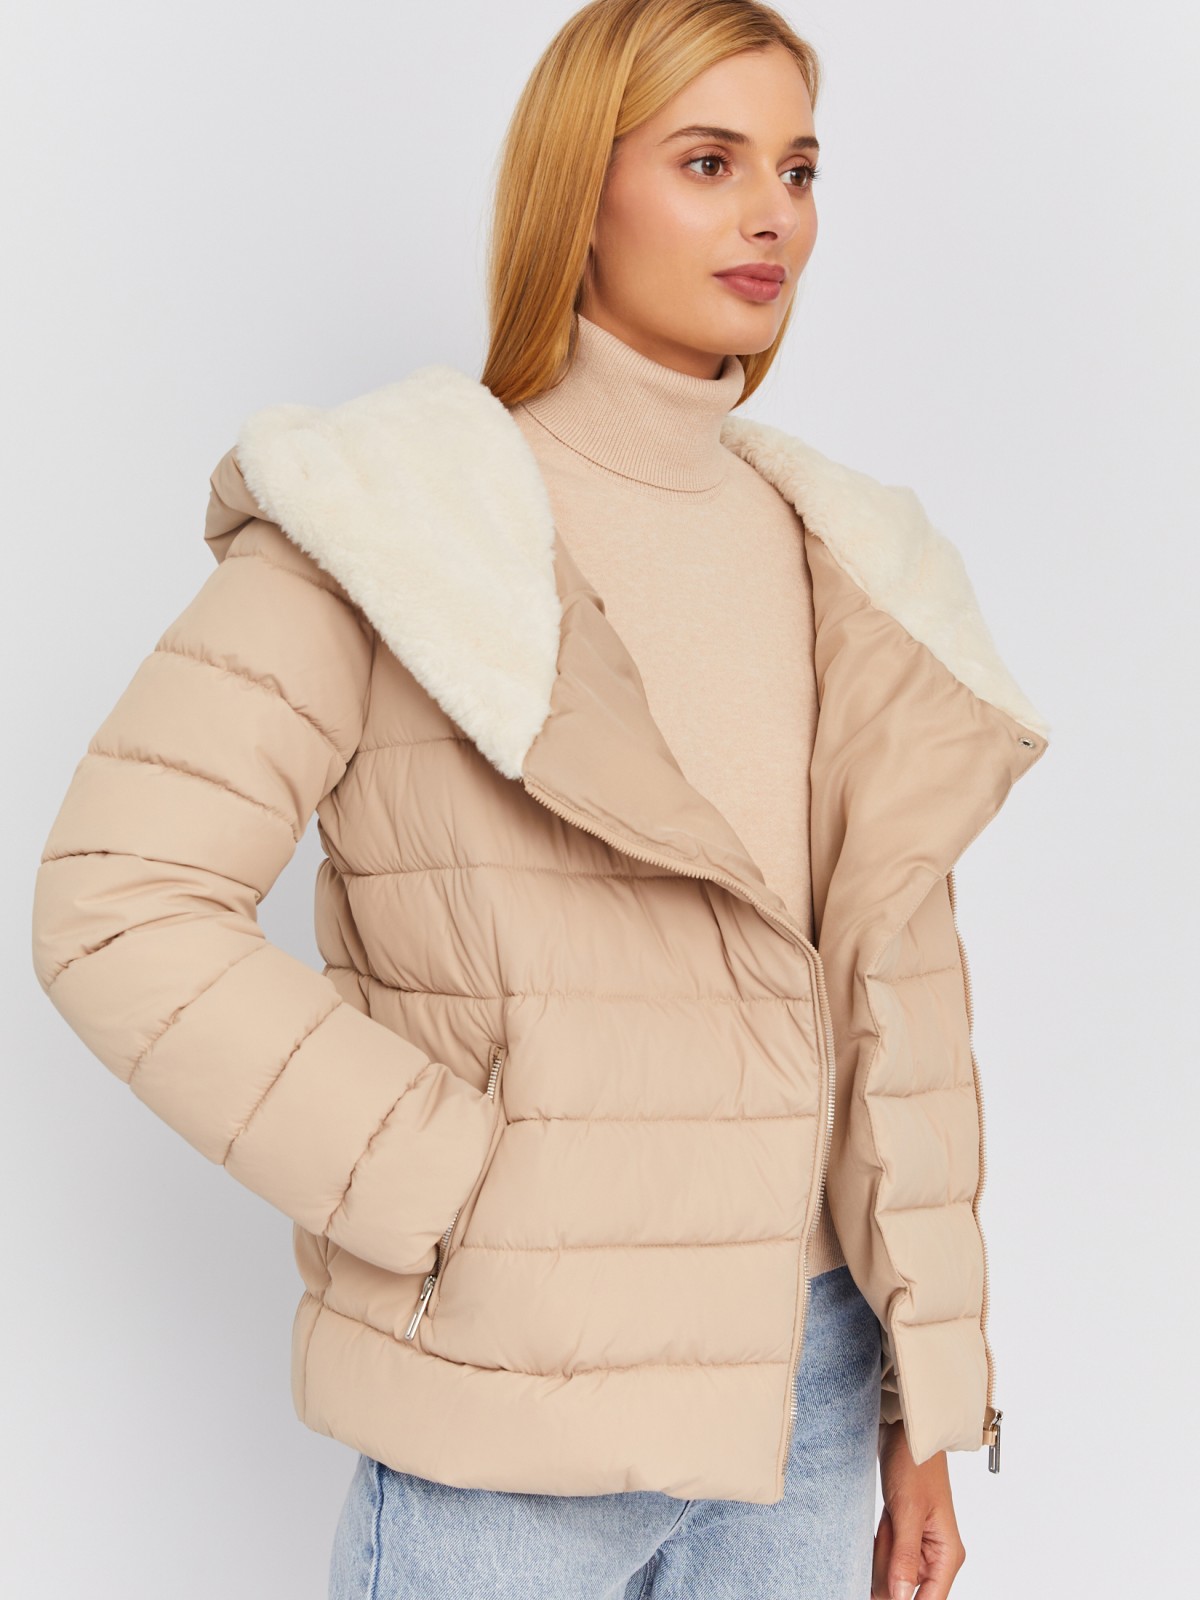 Тёплая стёганая куртка с капюшоном на меху и косой молнией zolla 023335112294, цвет бежевый, размер XS - фото 1